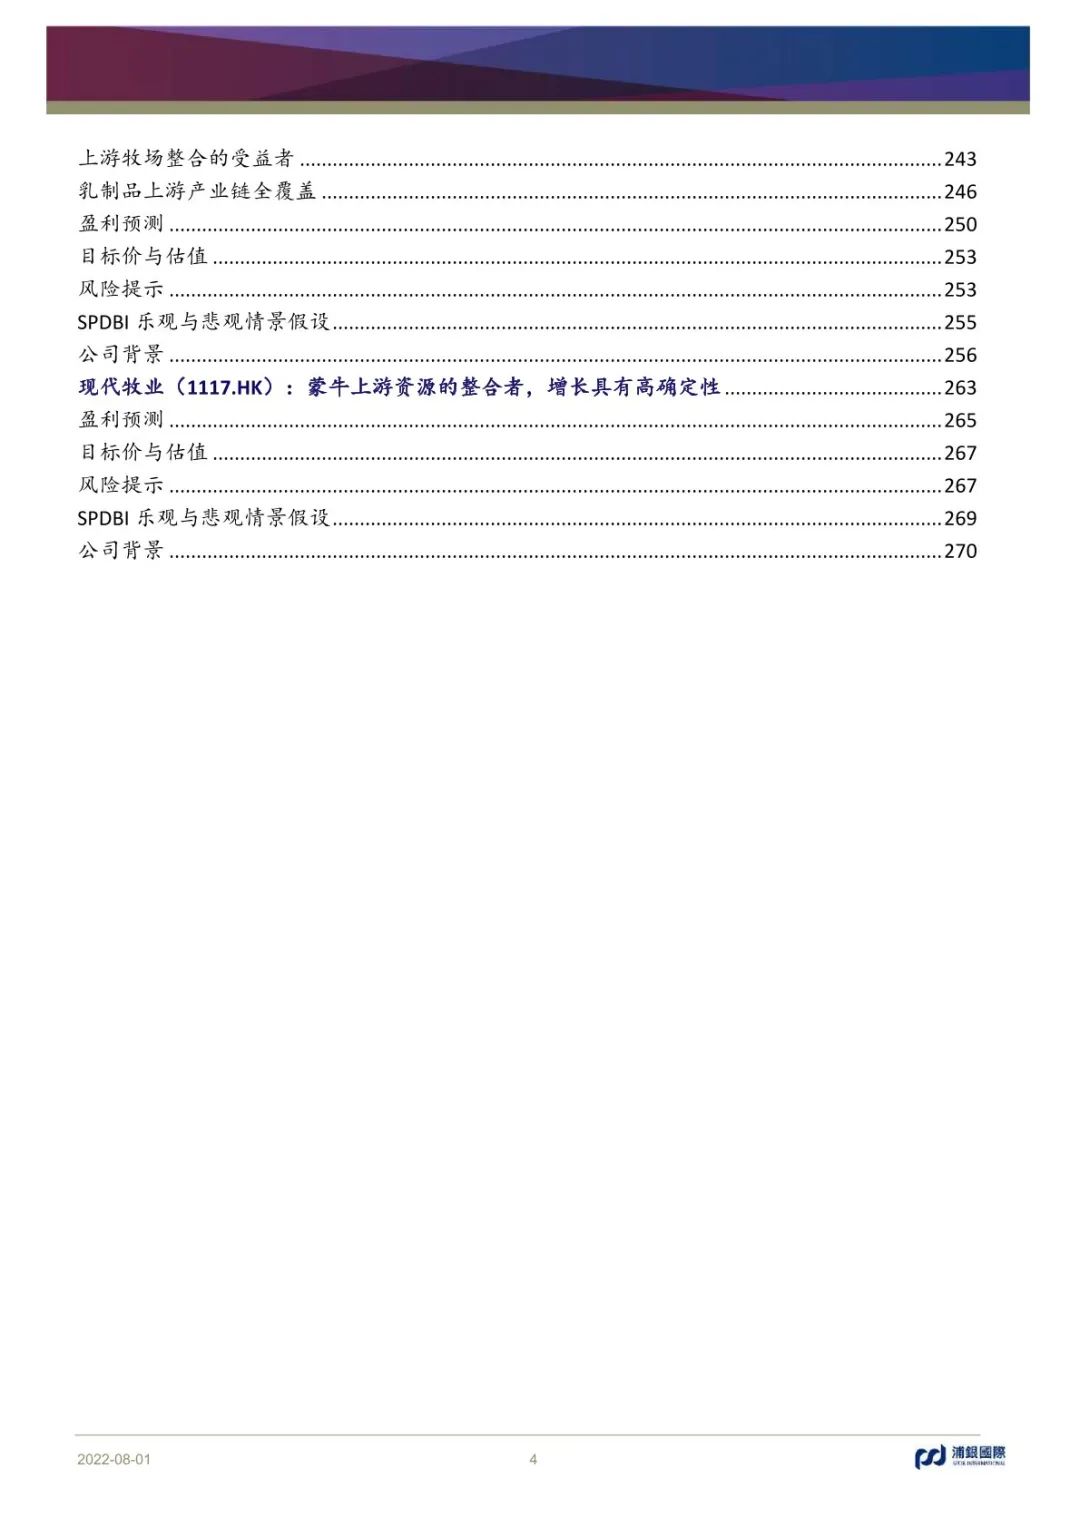 中国乳制品行业深度研究-278页（光明乳业、中国飞鹤、澳优乳业、妙可蓝多等）